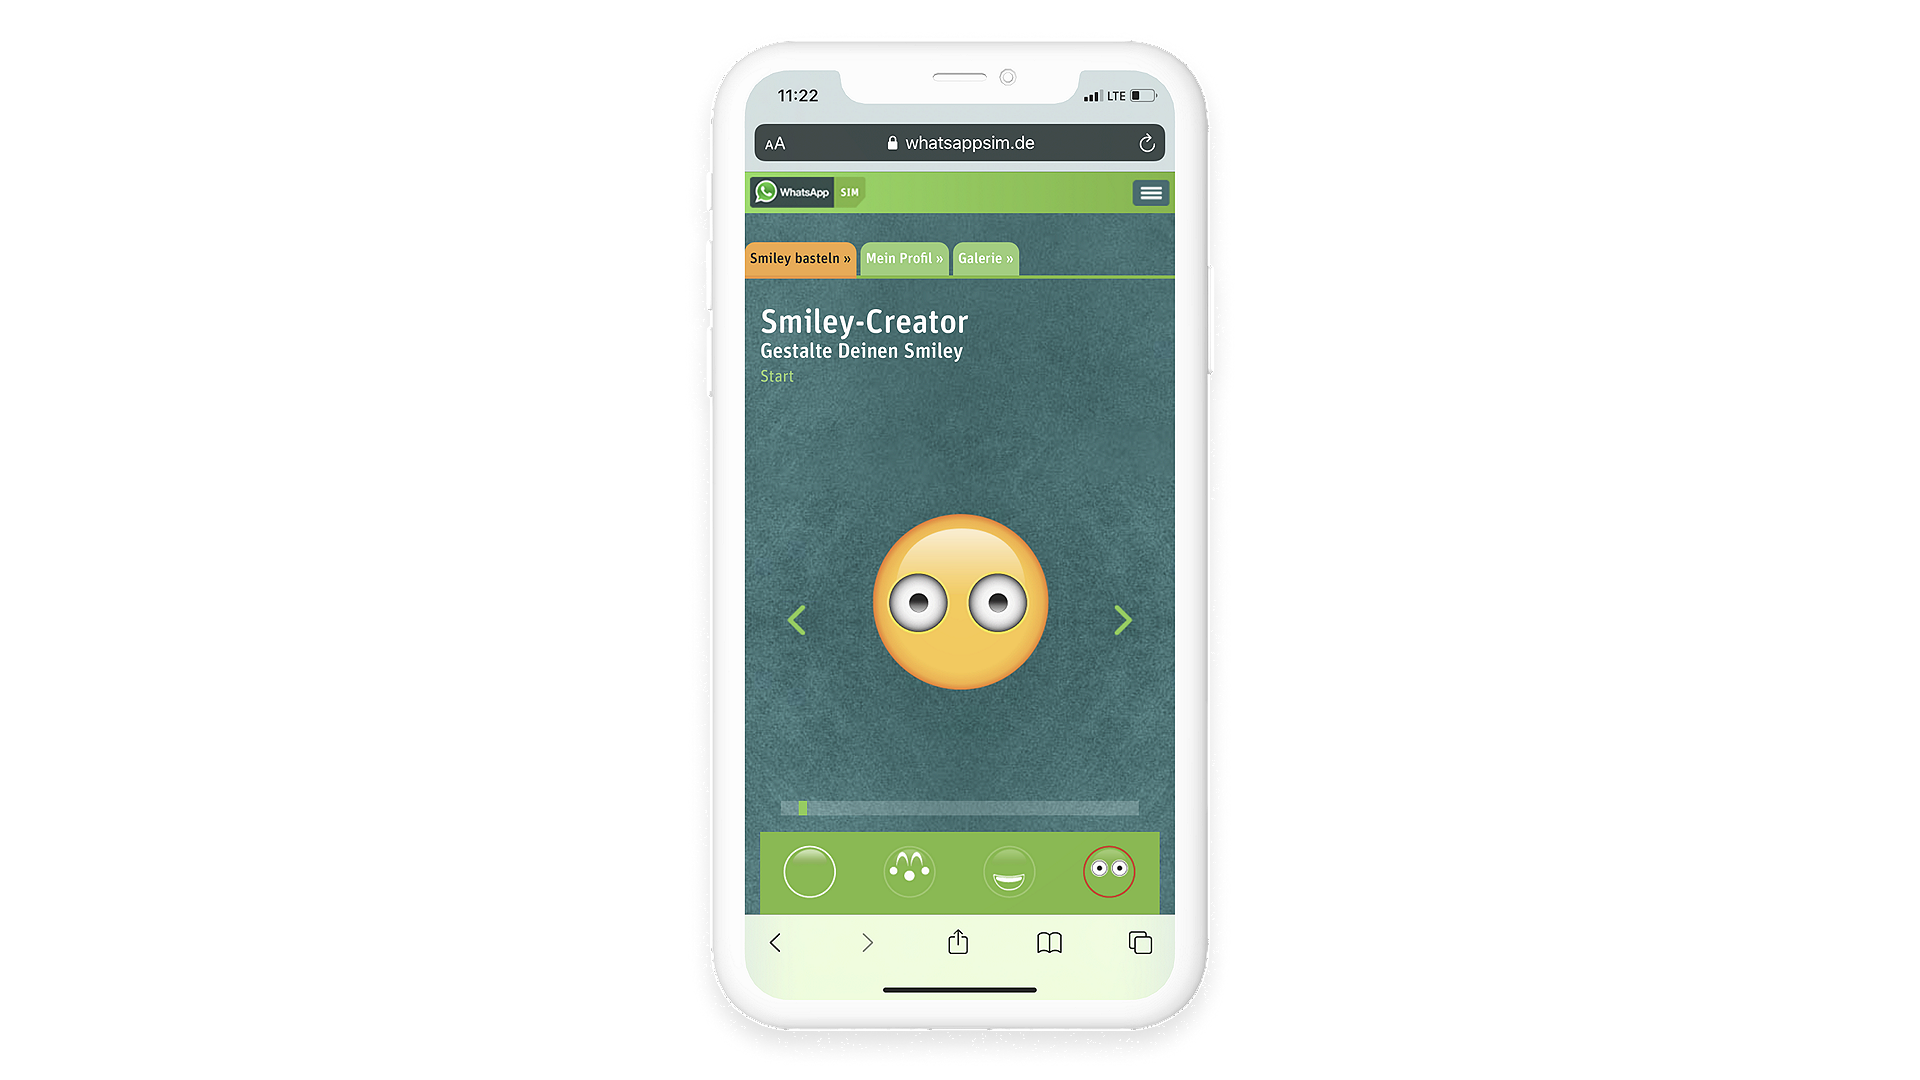 Anwendungs-Anleitung des WhatsApp SIM Smiley-Creator, um eigene Emojis zu erstellen